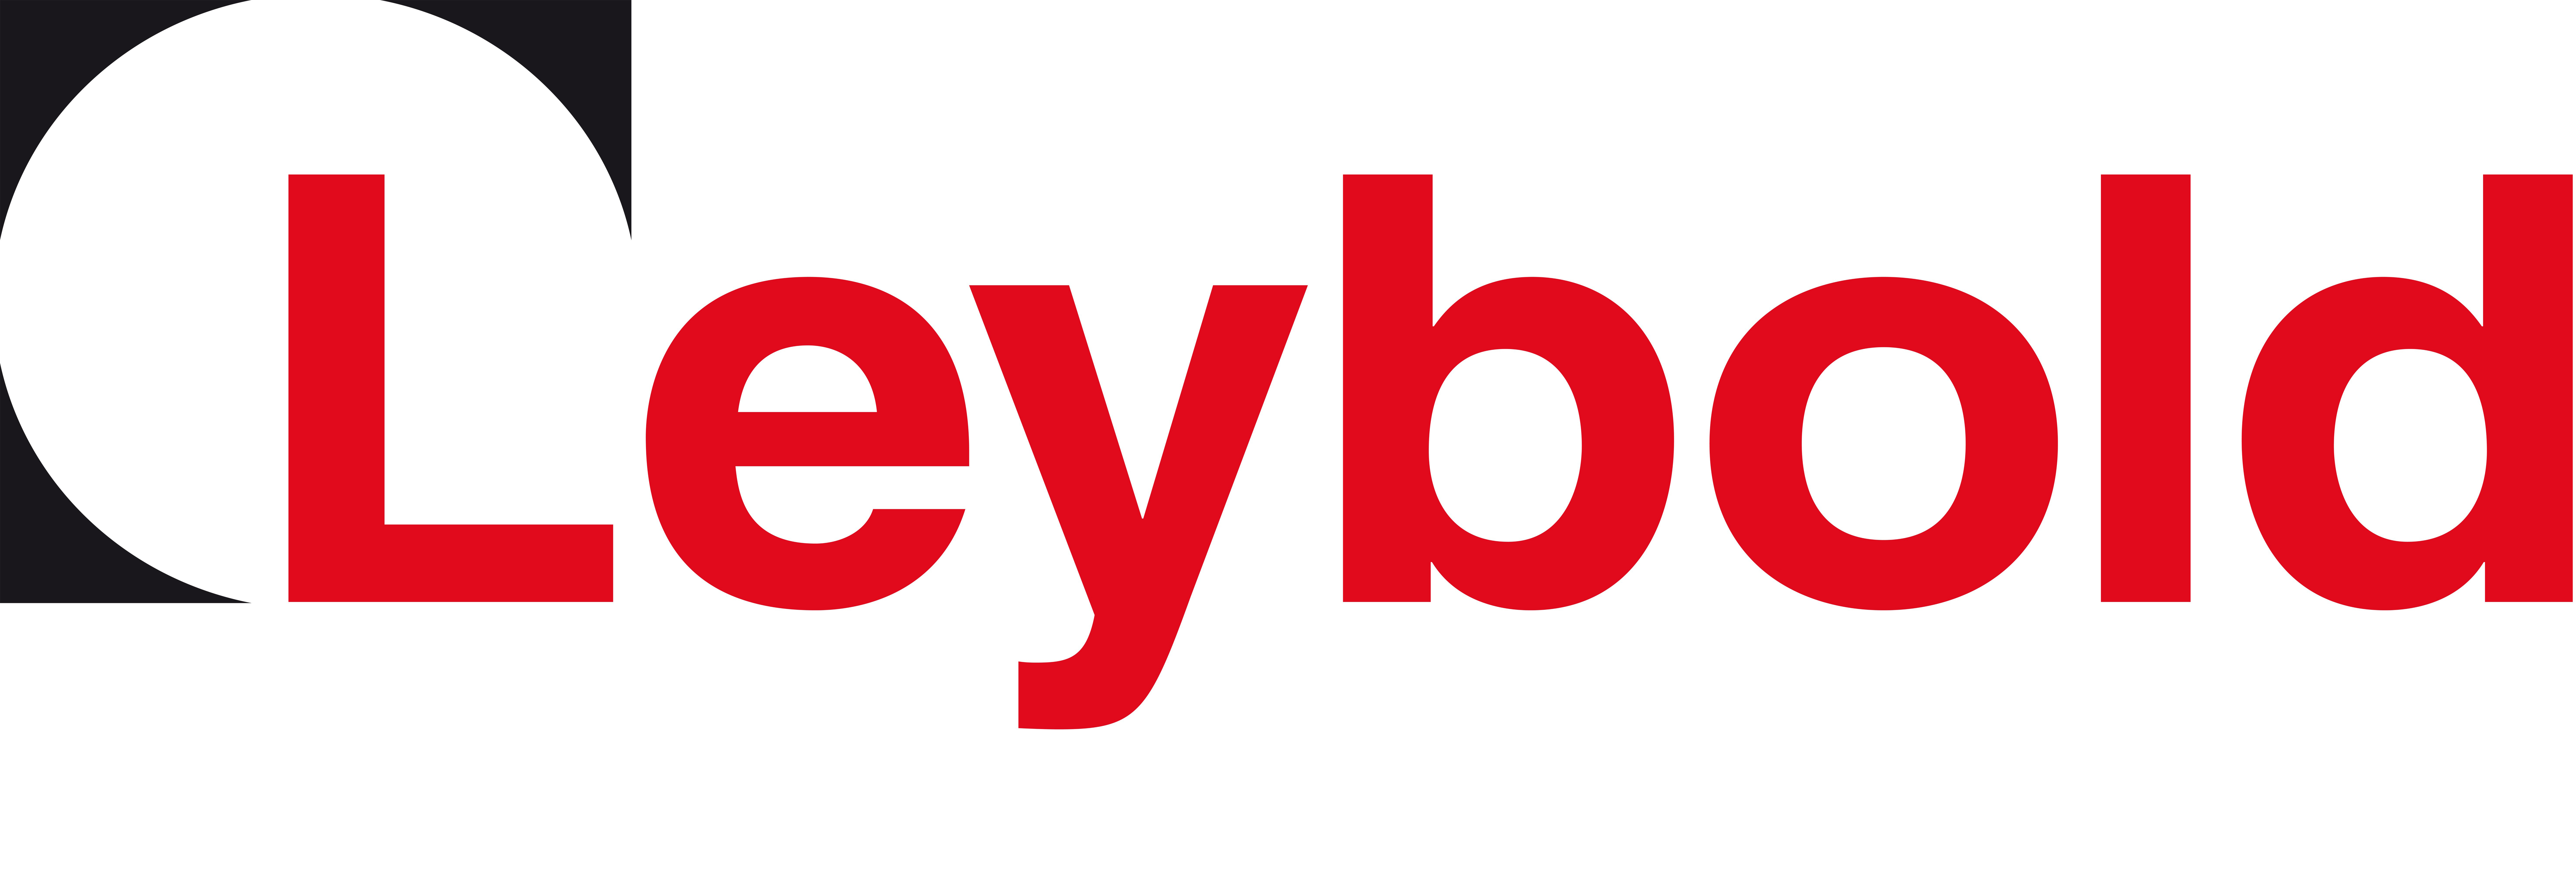 Leybold UK Ltd